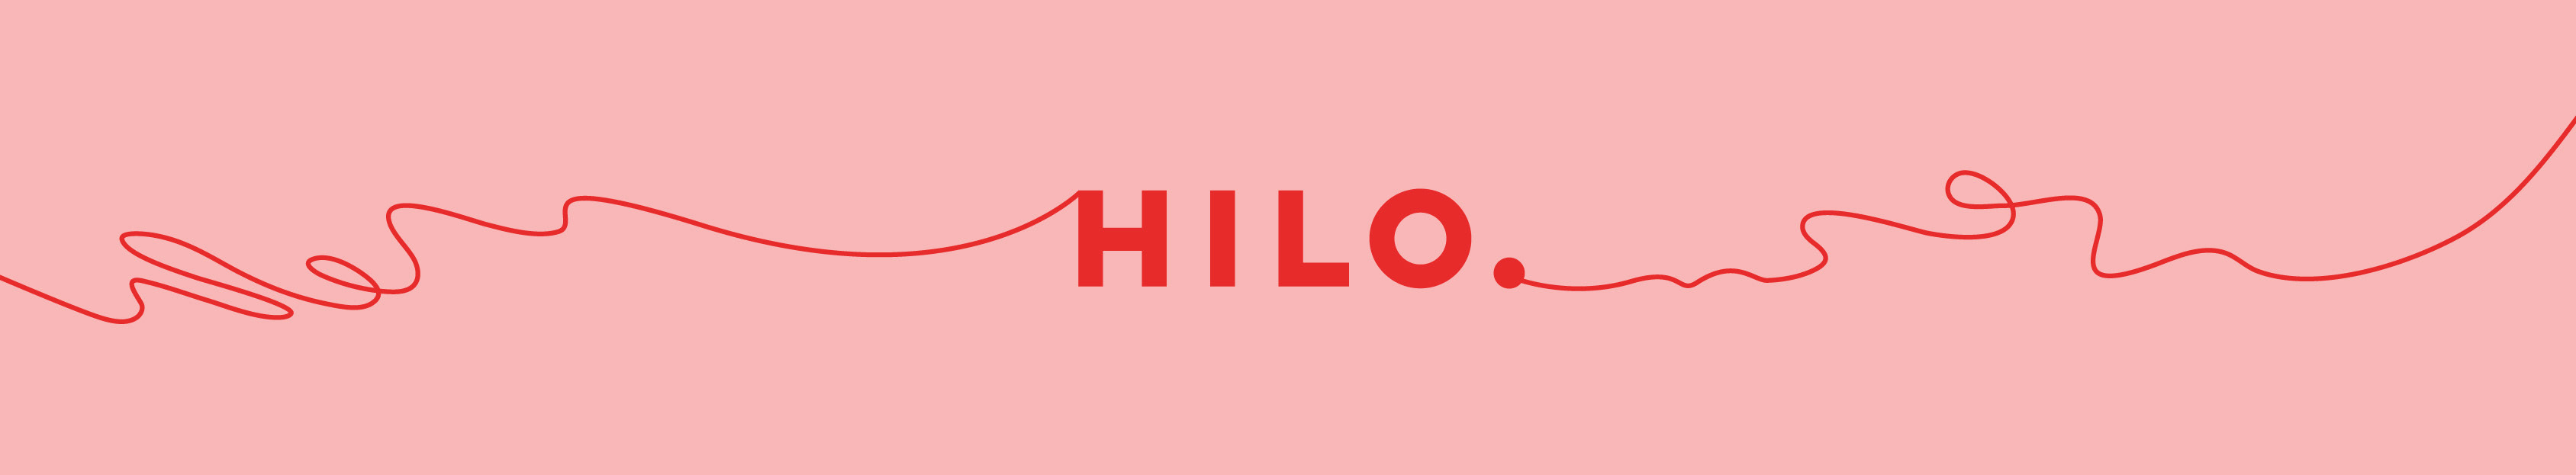 HILO .'s profile banner